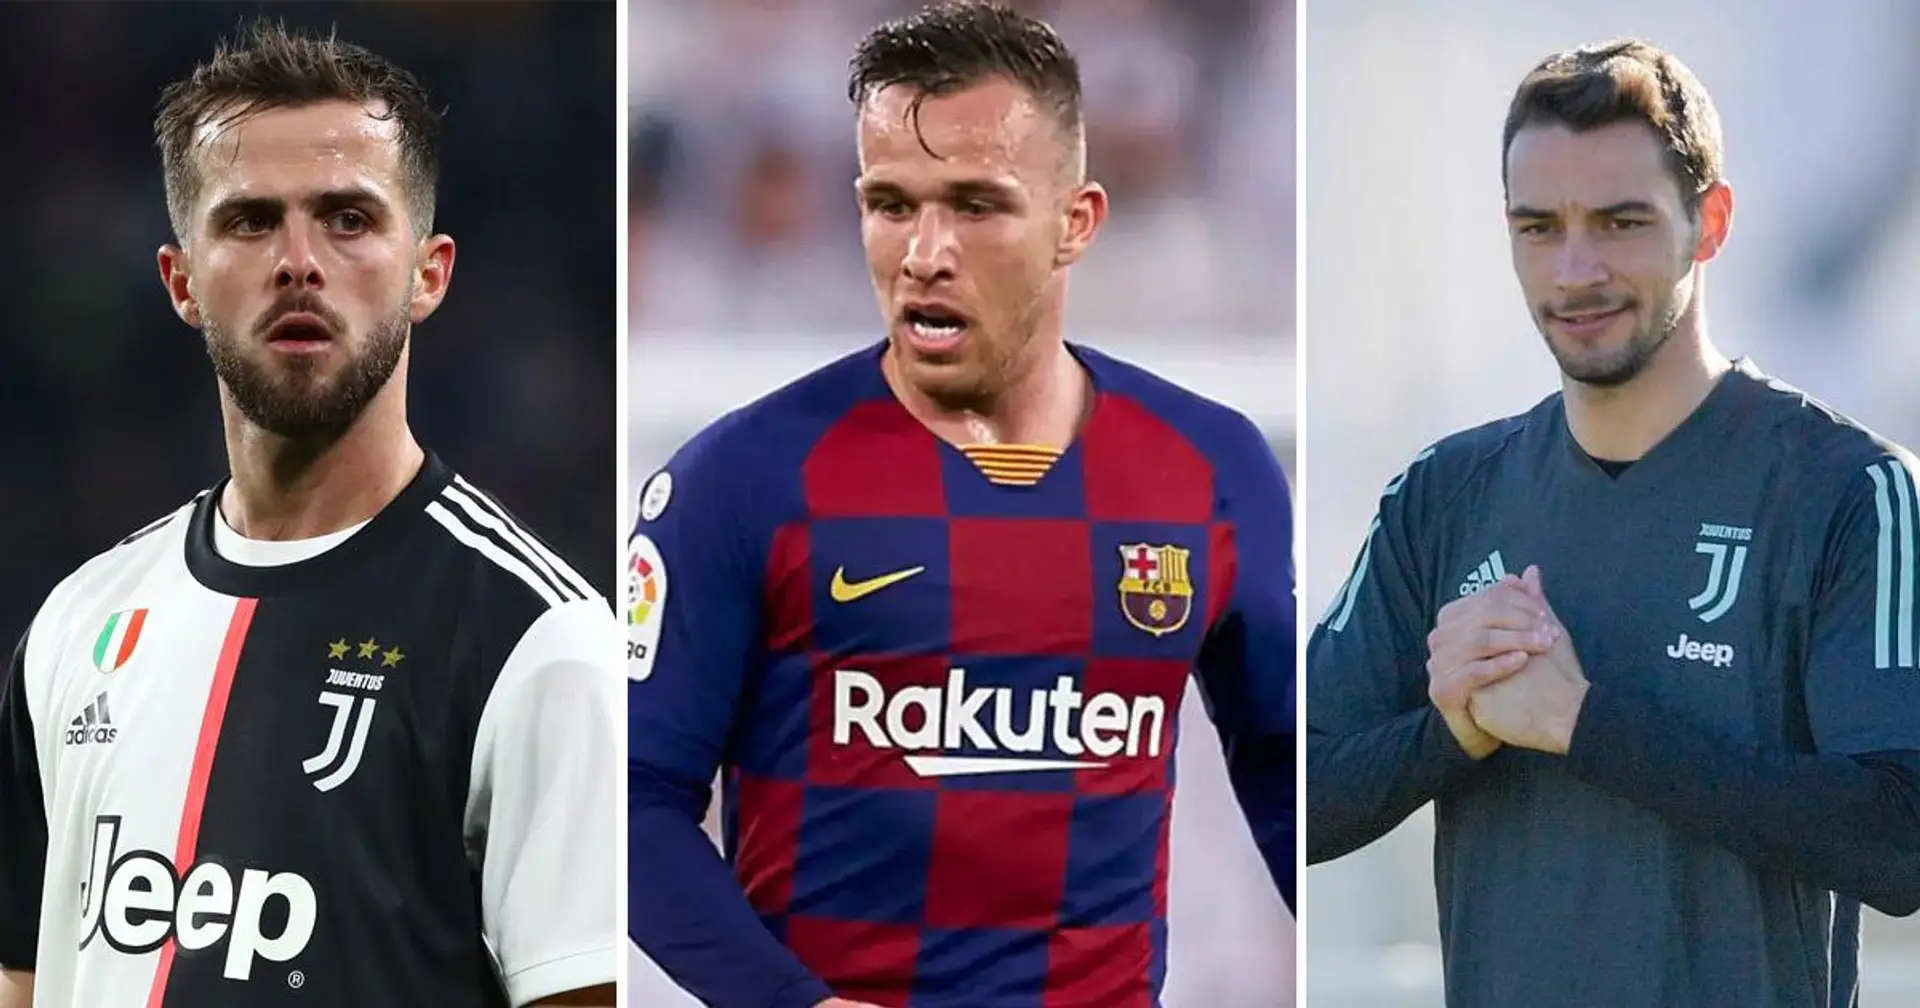 Des discussions entre le Barça et la Juventus seraient en cours: les noms d'Arthur, Pjanic et De Sciglio mentionnés